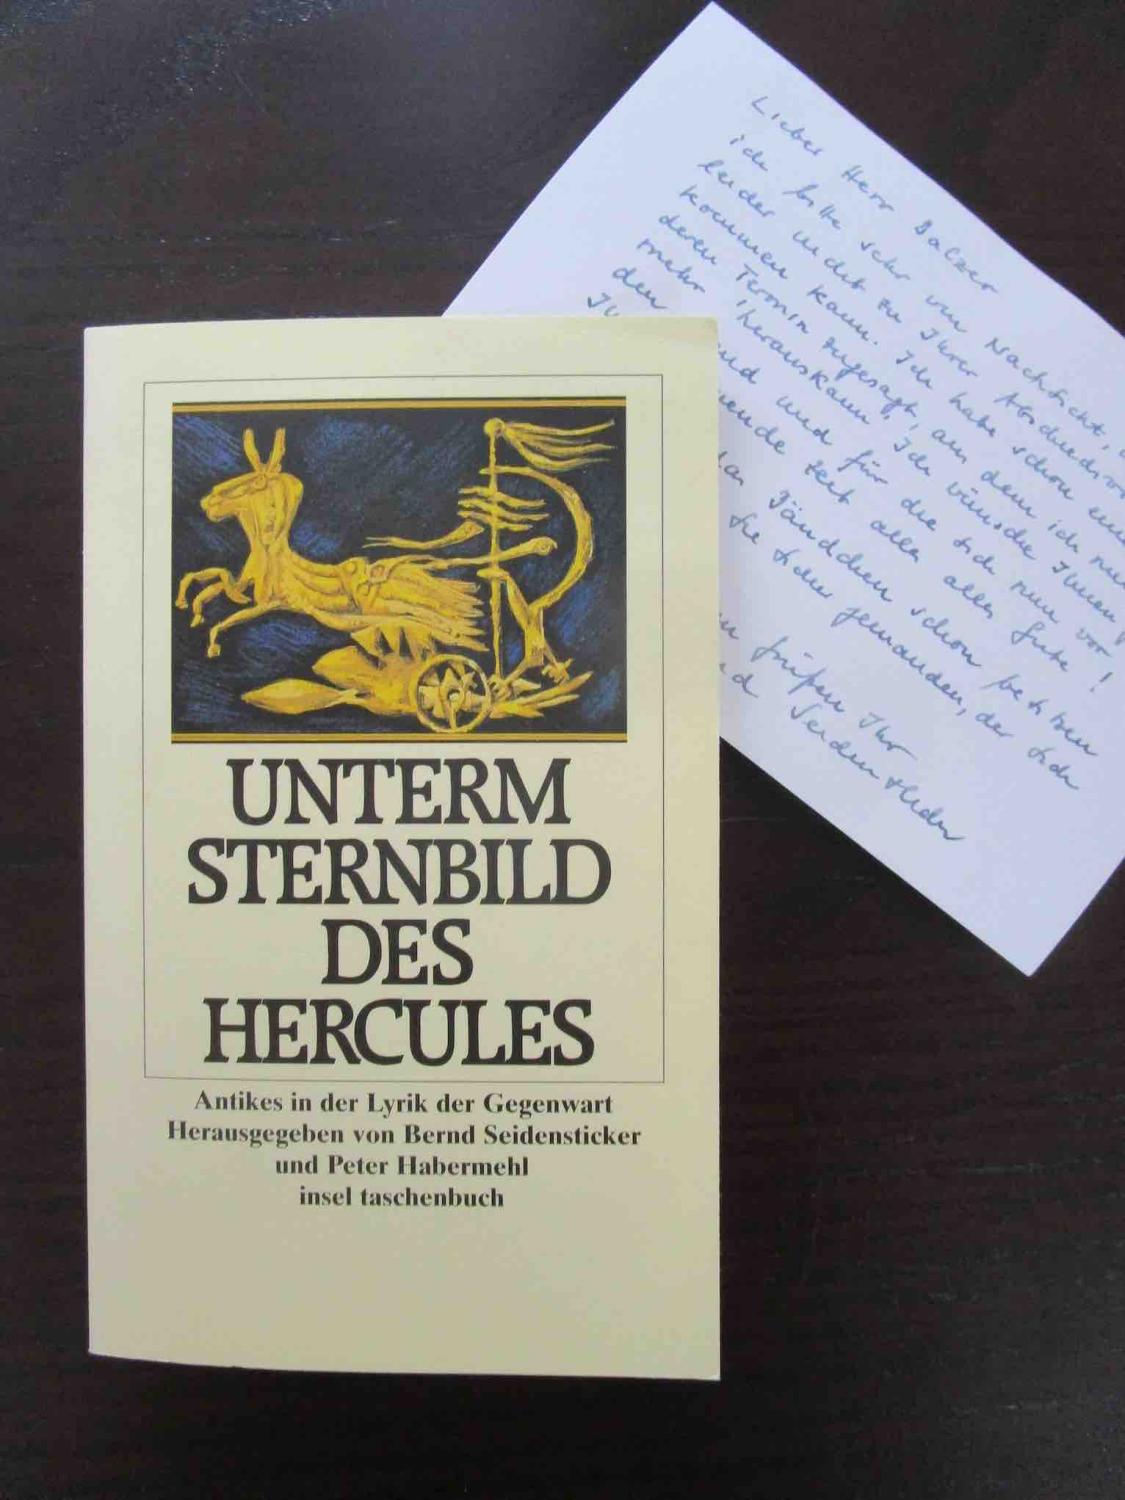 Unterm Sternbild des Hercules. Antikes in der Lyrik der Gegenwart. Herausgegeben von Bernd Seidensticker und Peter Habermehl.